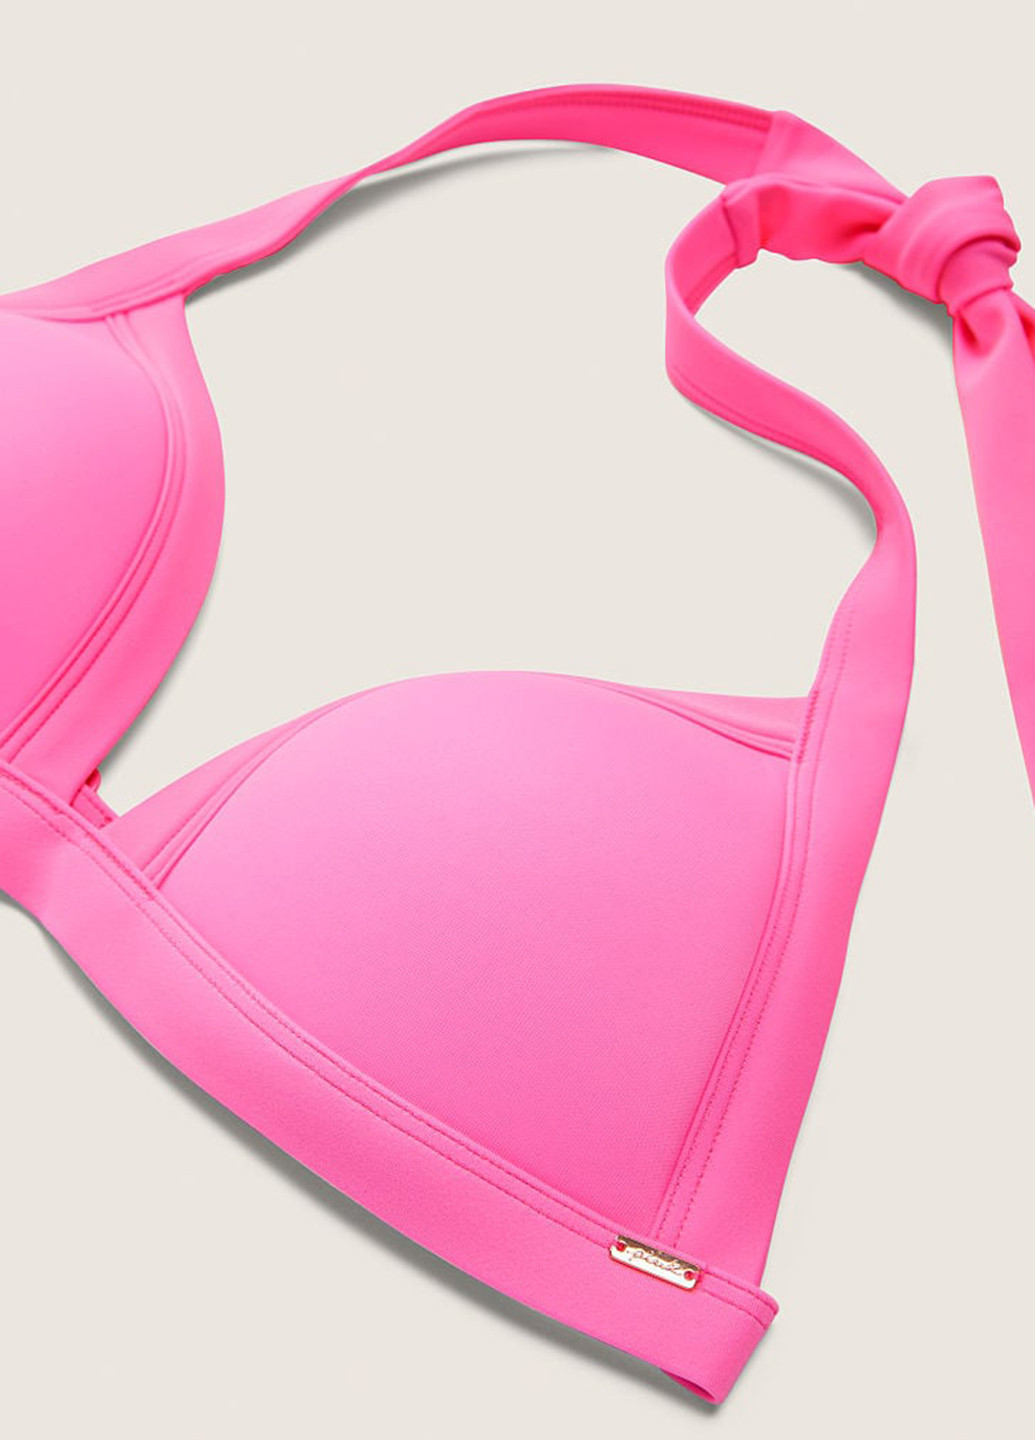 Рожевий літній купальник (купальний ліф, трусики) бікіні, роздільний Victoria's Secret